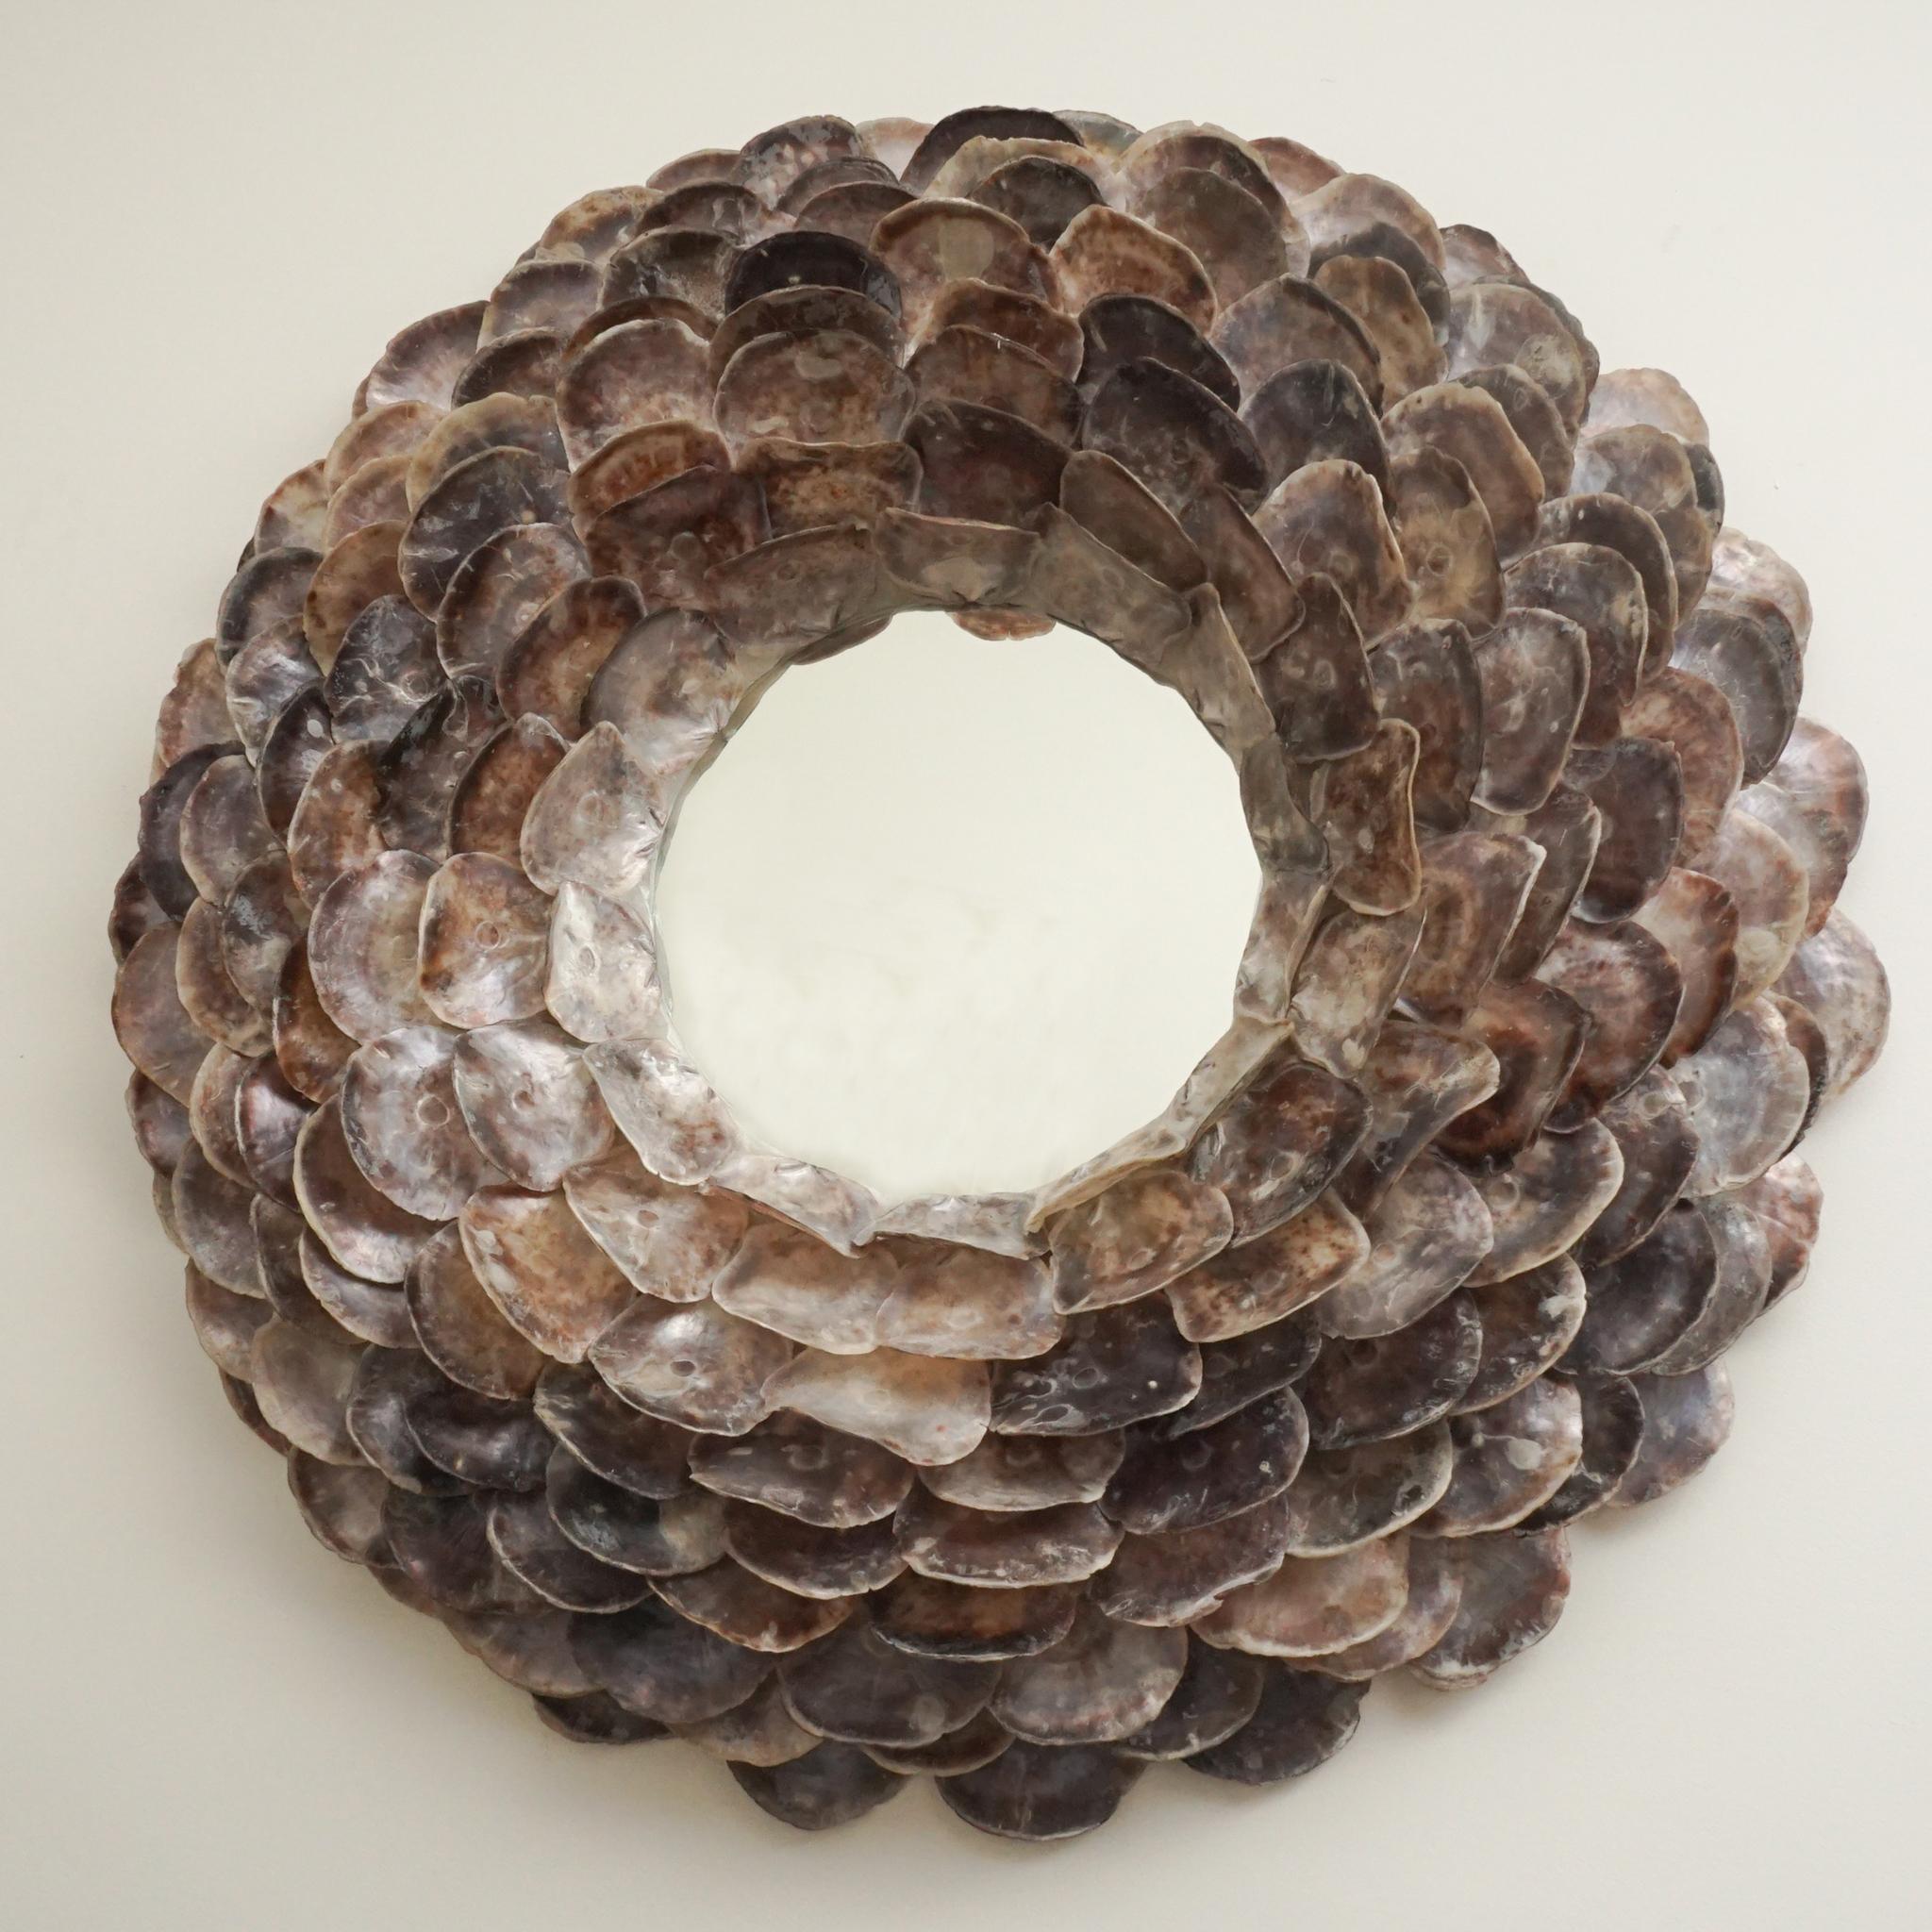 Le miroir rond spectaculaire, illustré ici, présente des coquilles d'huîtres disposées comme les pétales d'une fleur de 30 cm.  Les coquillages sont disposés de façon complexe, en tailles progressives, du plus petit au centre au plus grand sur le